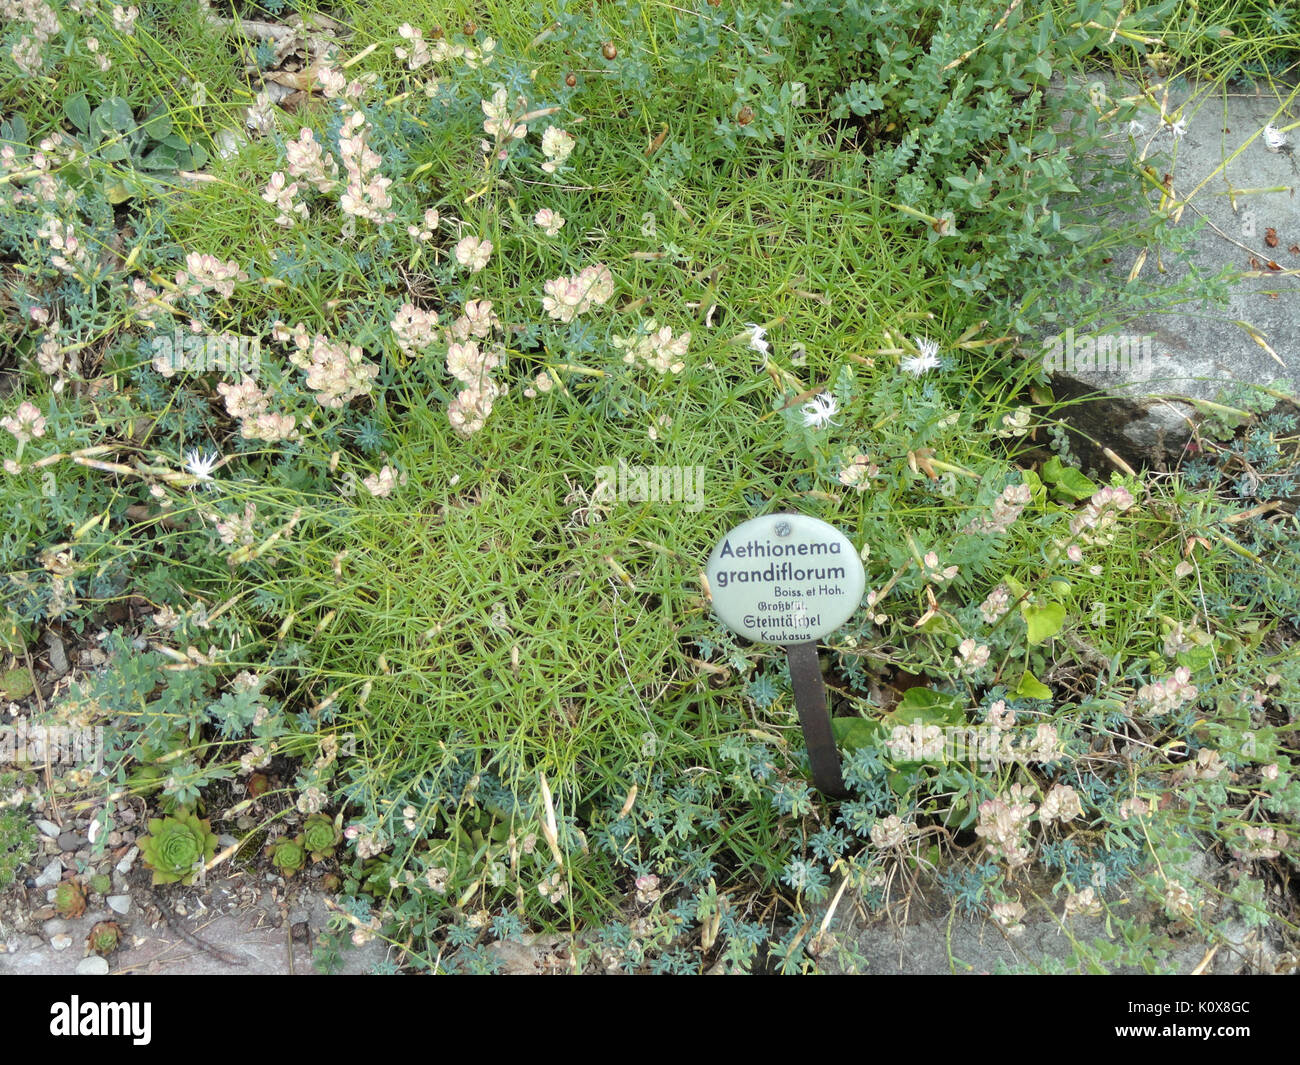 Aethionema grandiflorum   Botanischer Garten, Frankfurt am Main   DSC02642 Stock Photo